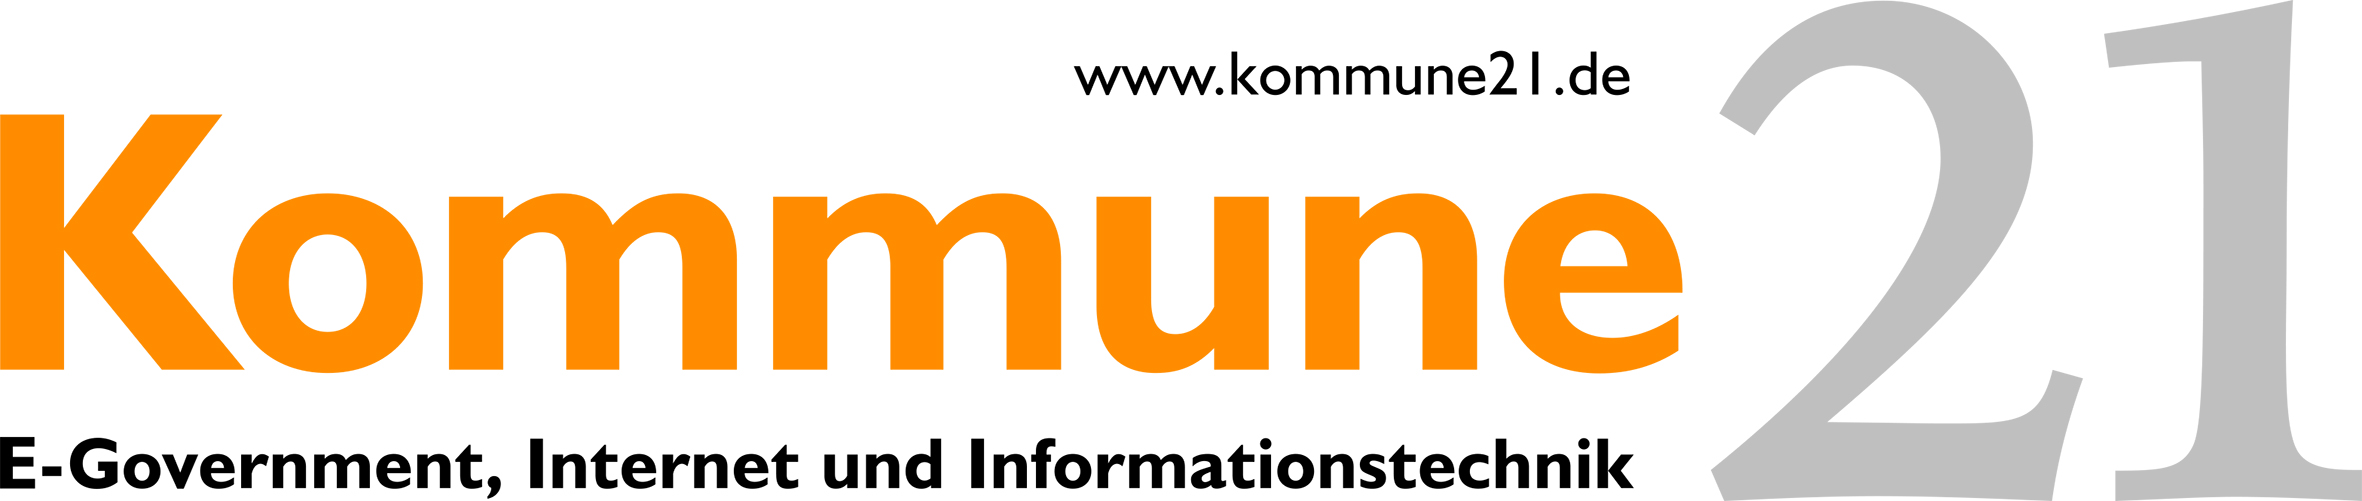 Logo https://www.kommune21.de/